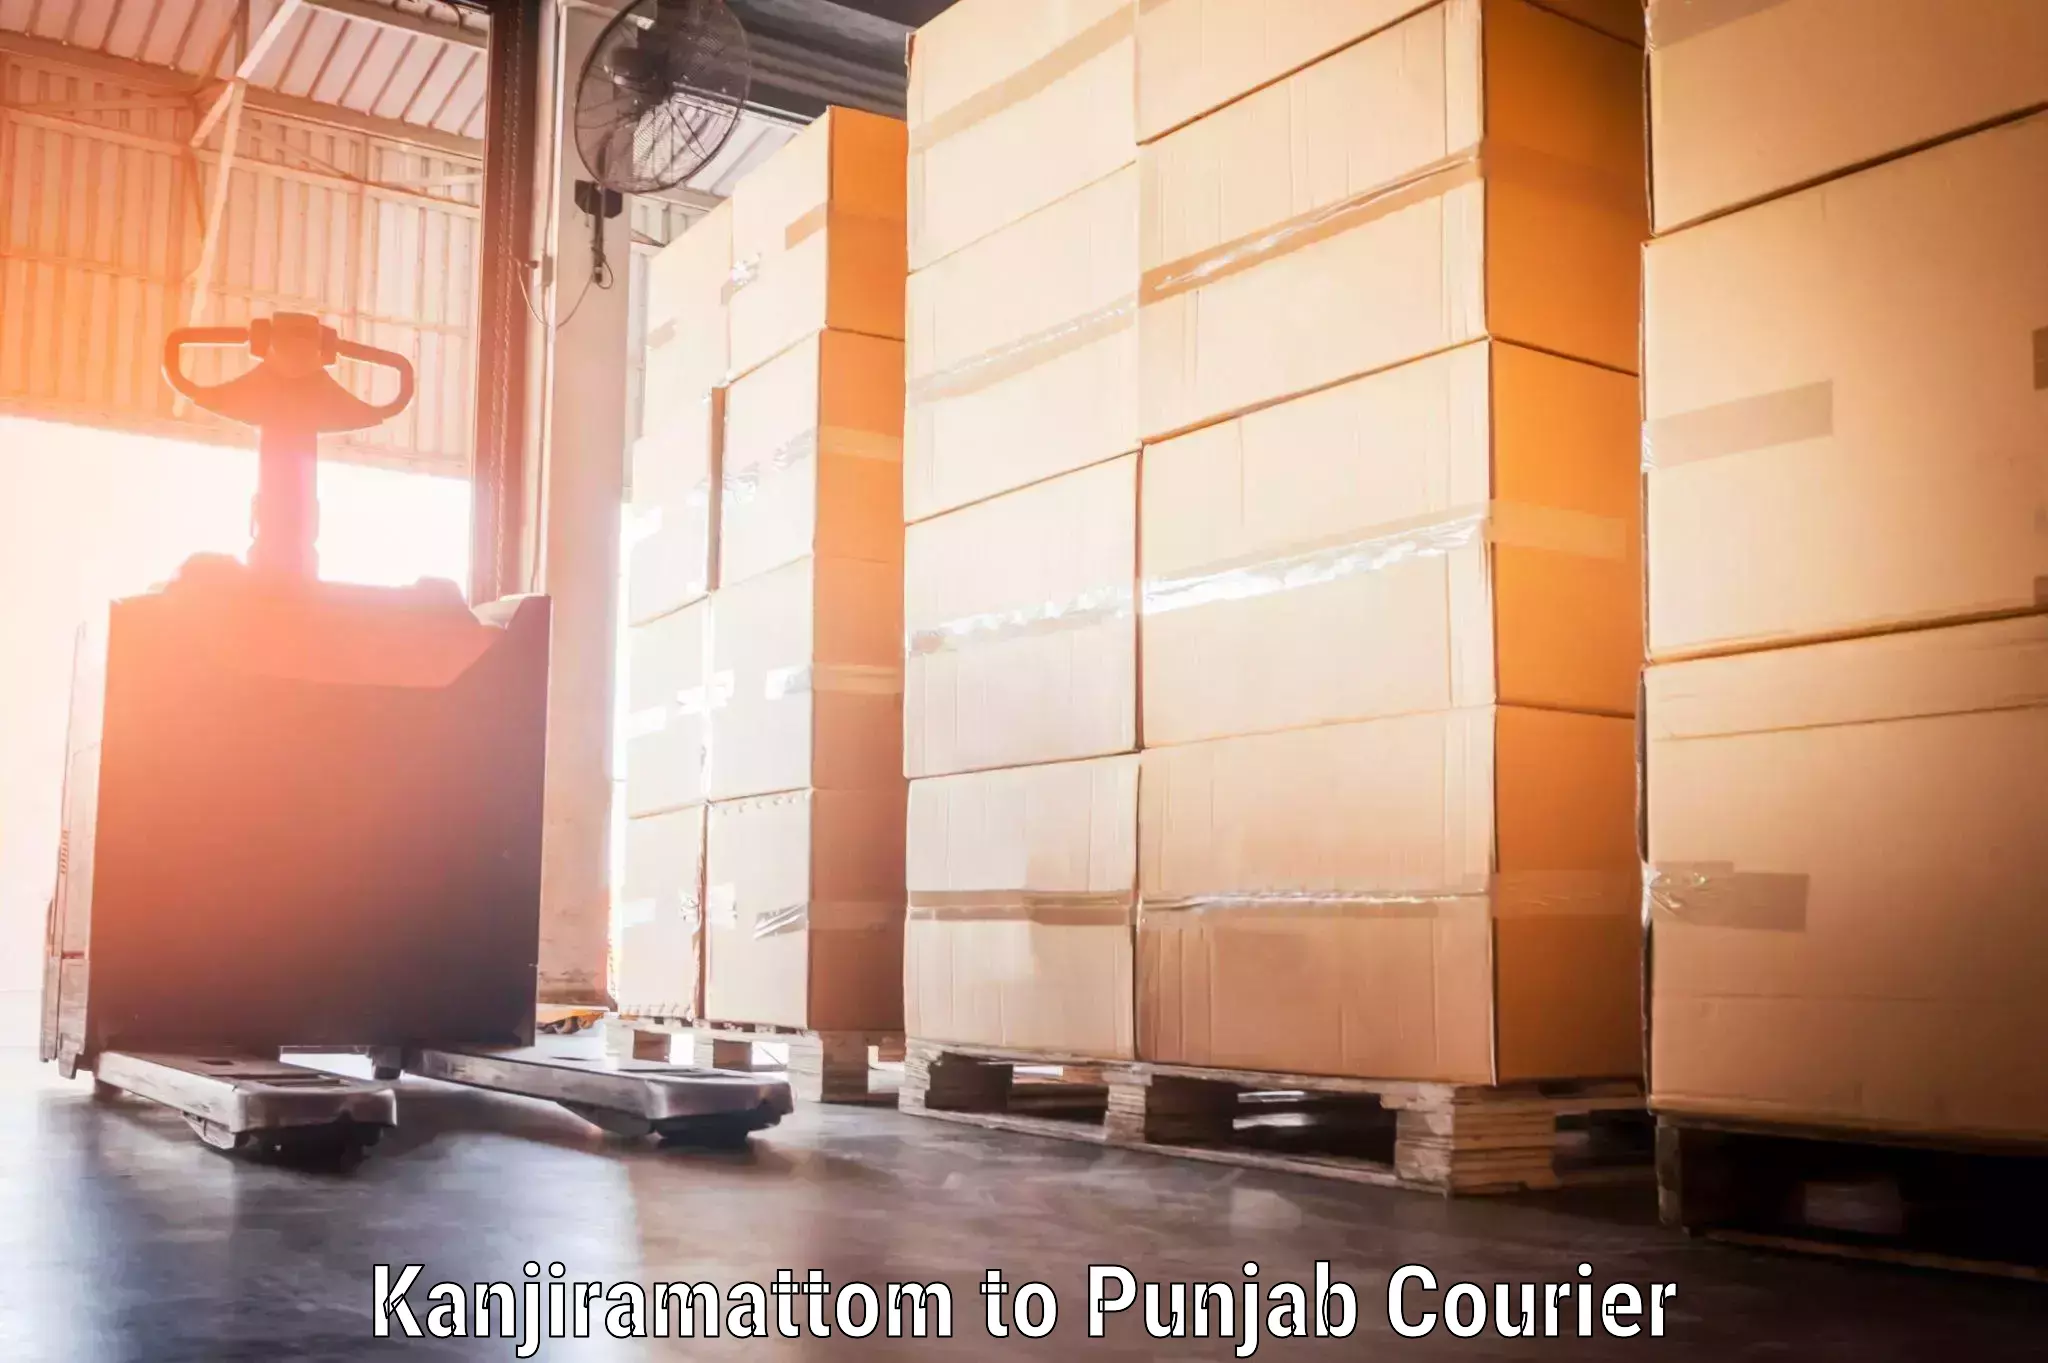 Weekend baggage shipping Kanjiramattom to Punjab